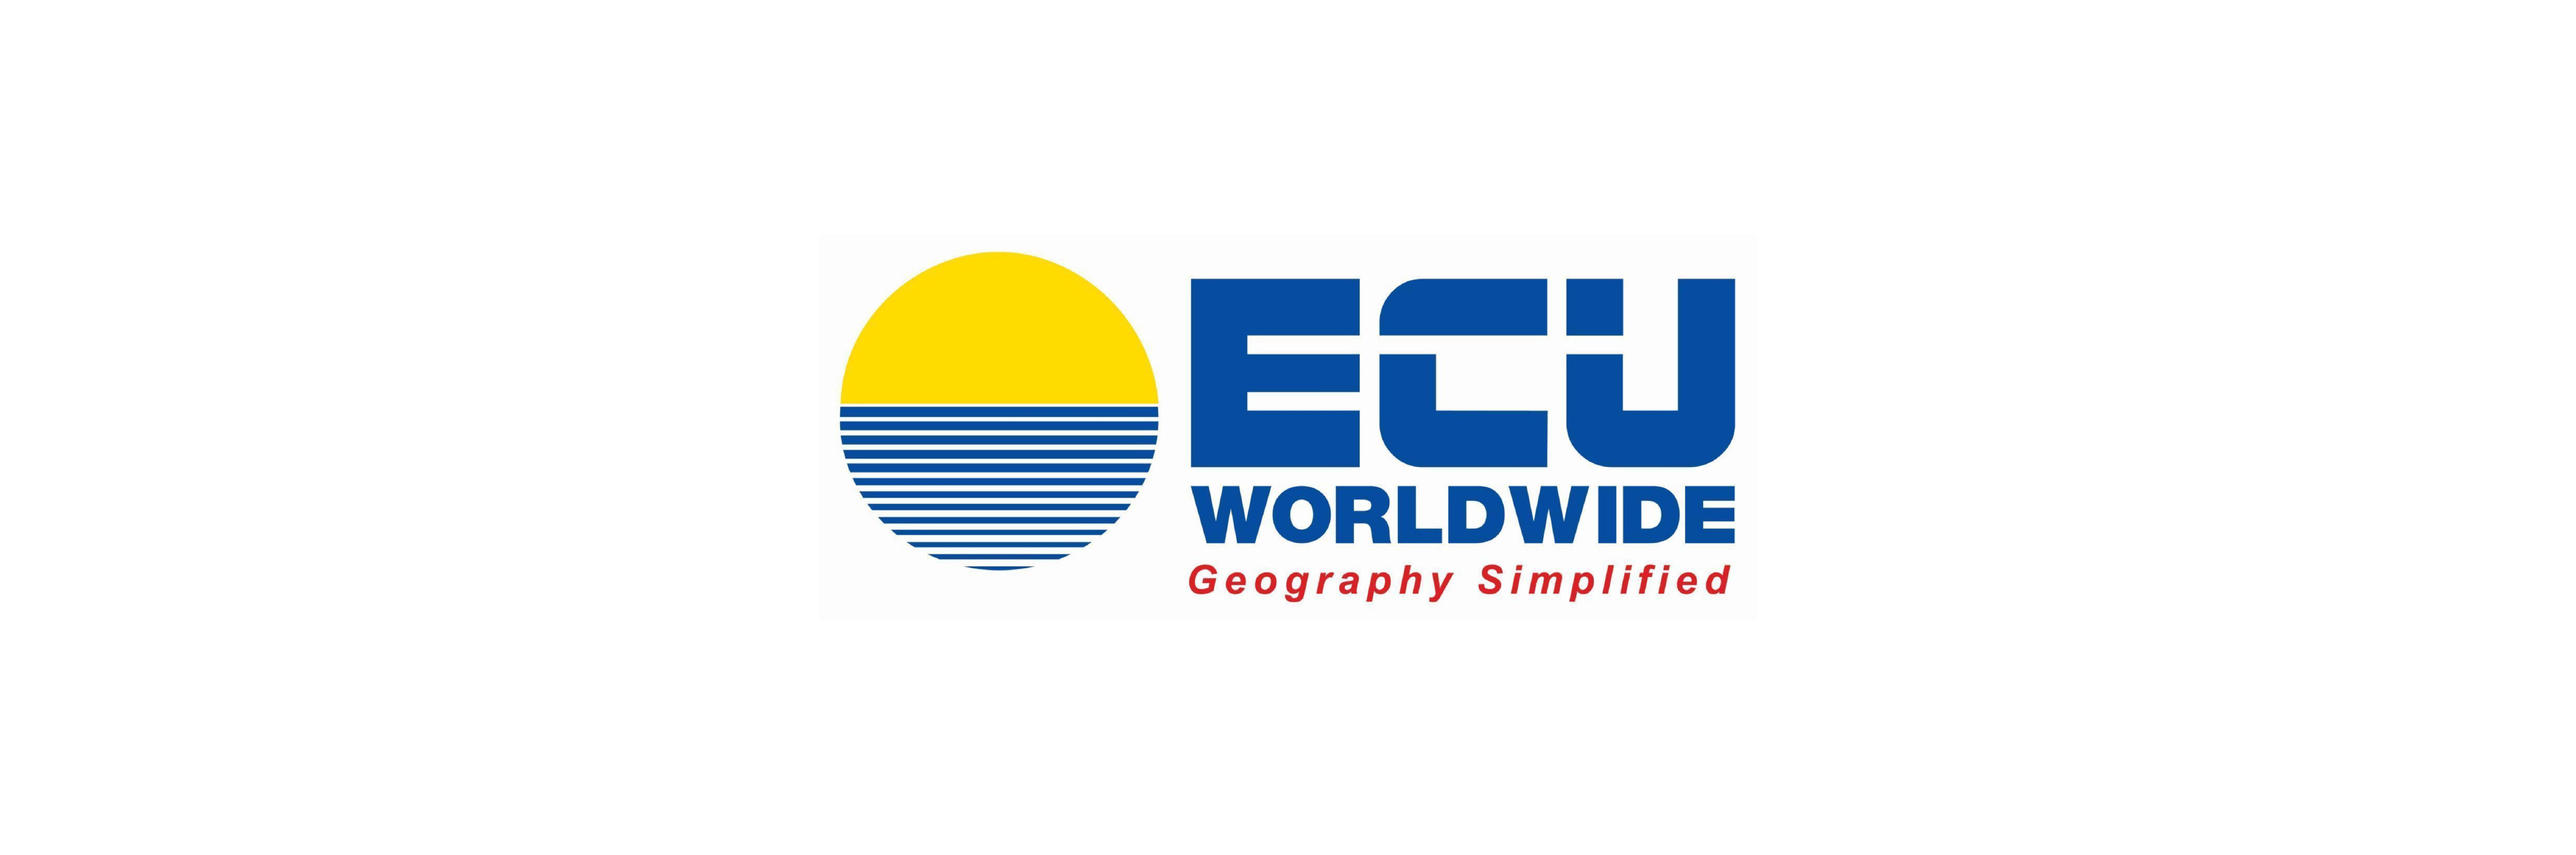 partner-logos_ECU